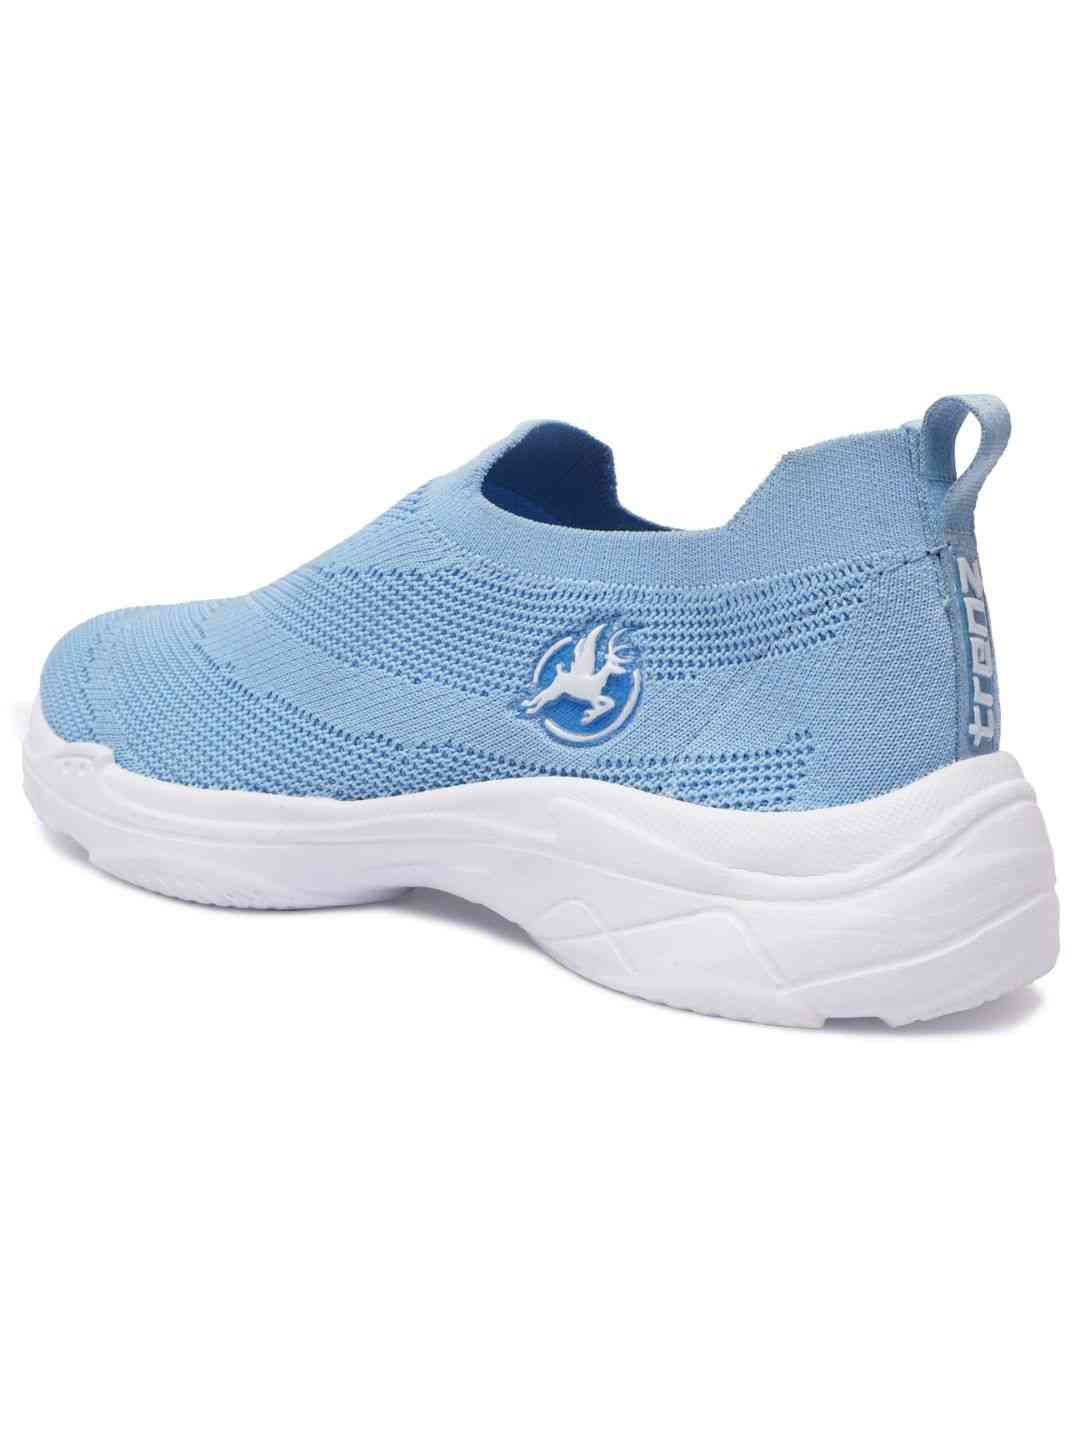 Trenz Marina Sky Blue Women Walking Shoes